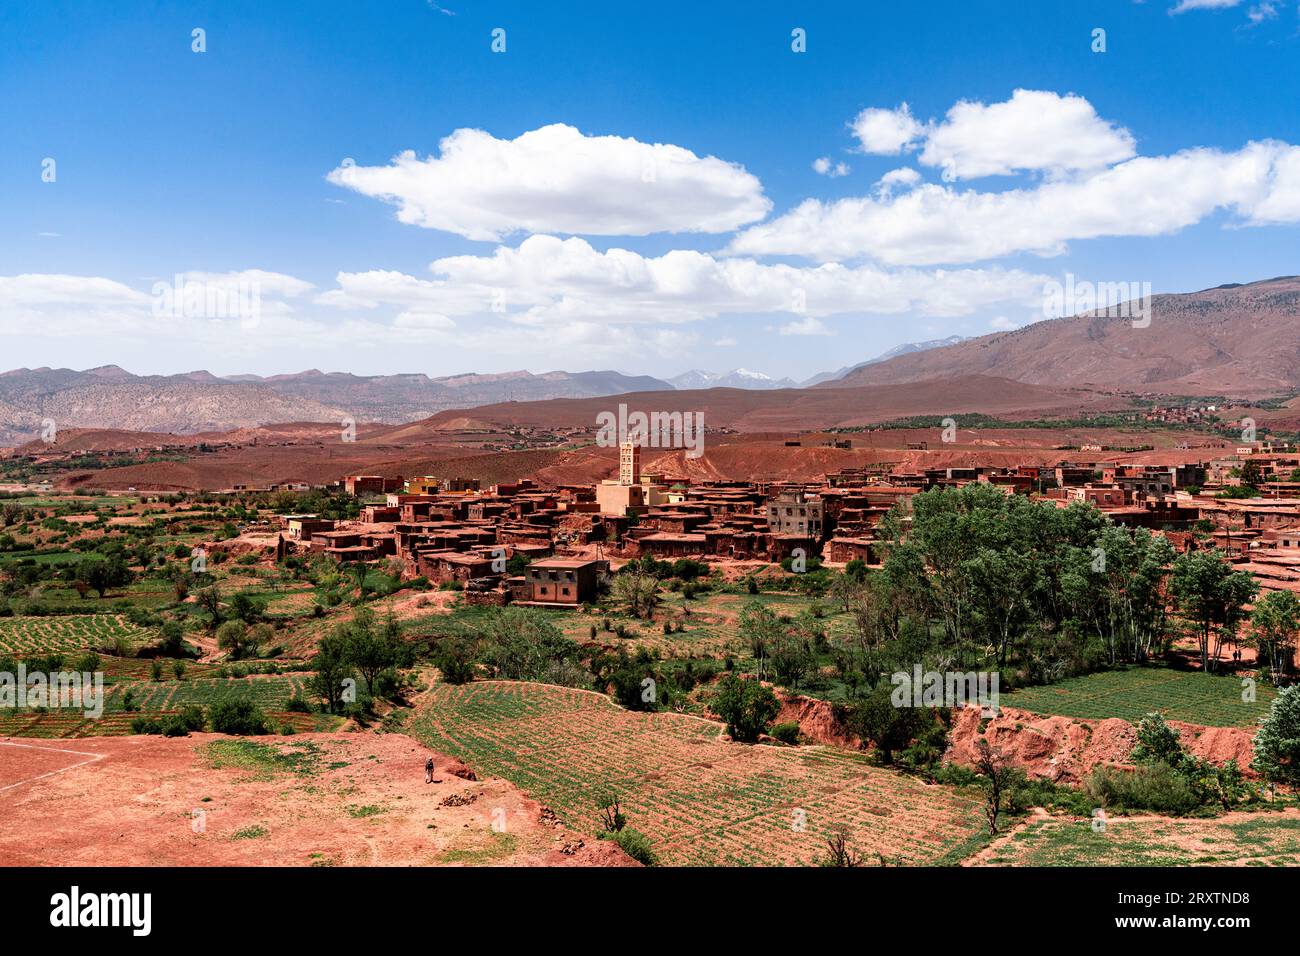 Vista del vecchio villaggio fortificato e delle montagne circostanti, dell'alto Atlante della Kasbah di Telouet, del Marocco, del Nord Africa e dell'Africa Foto Stock